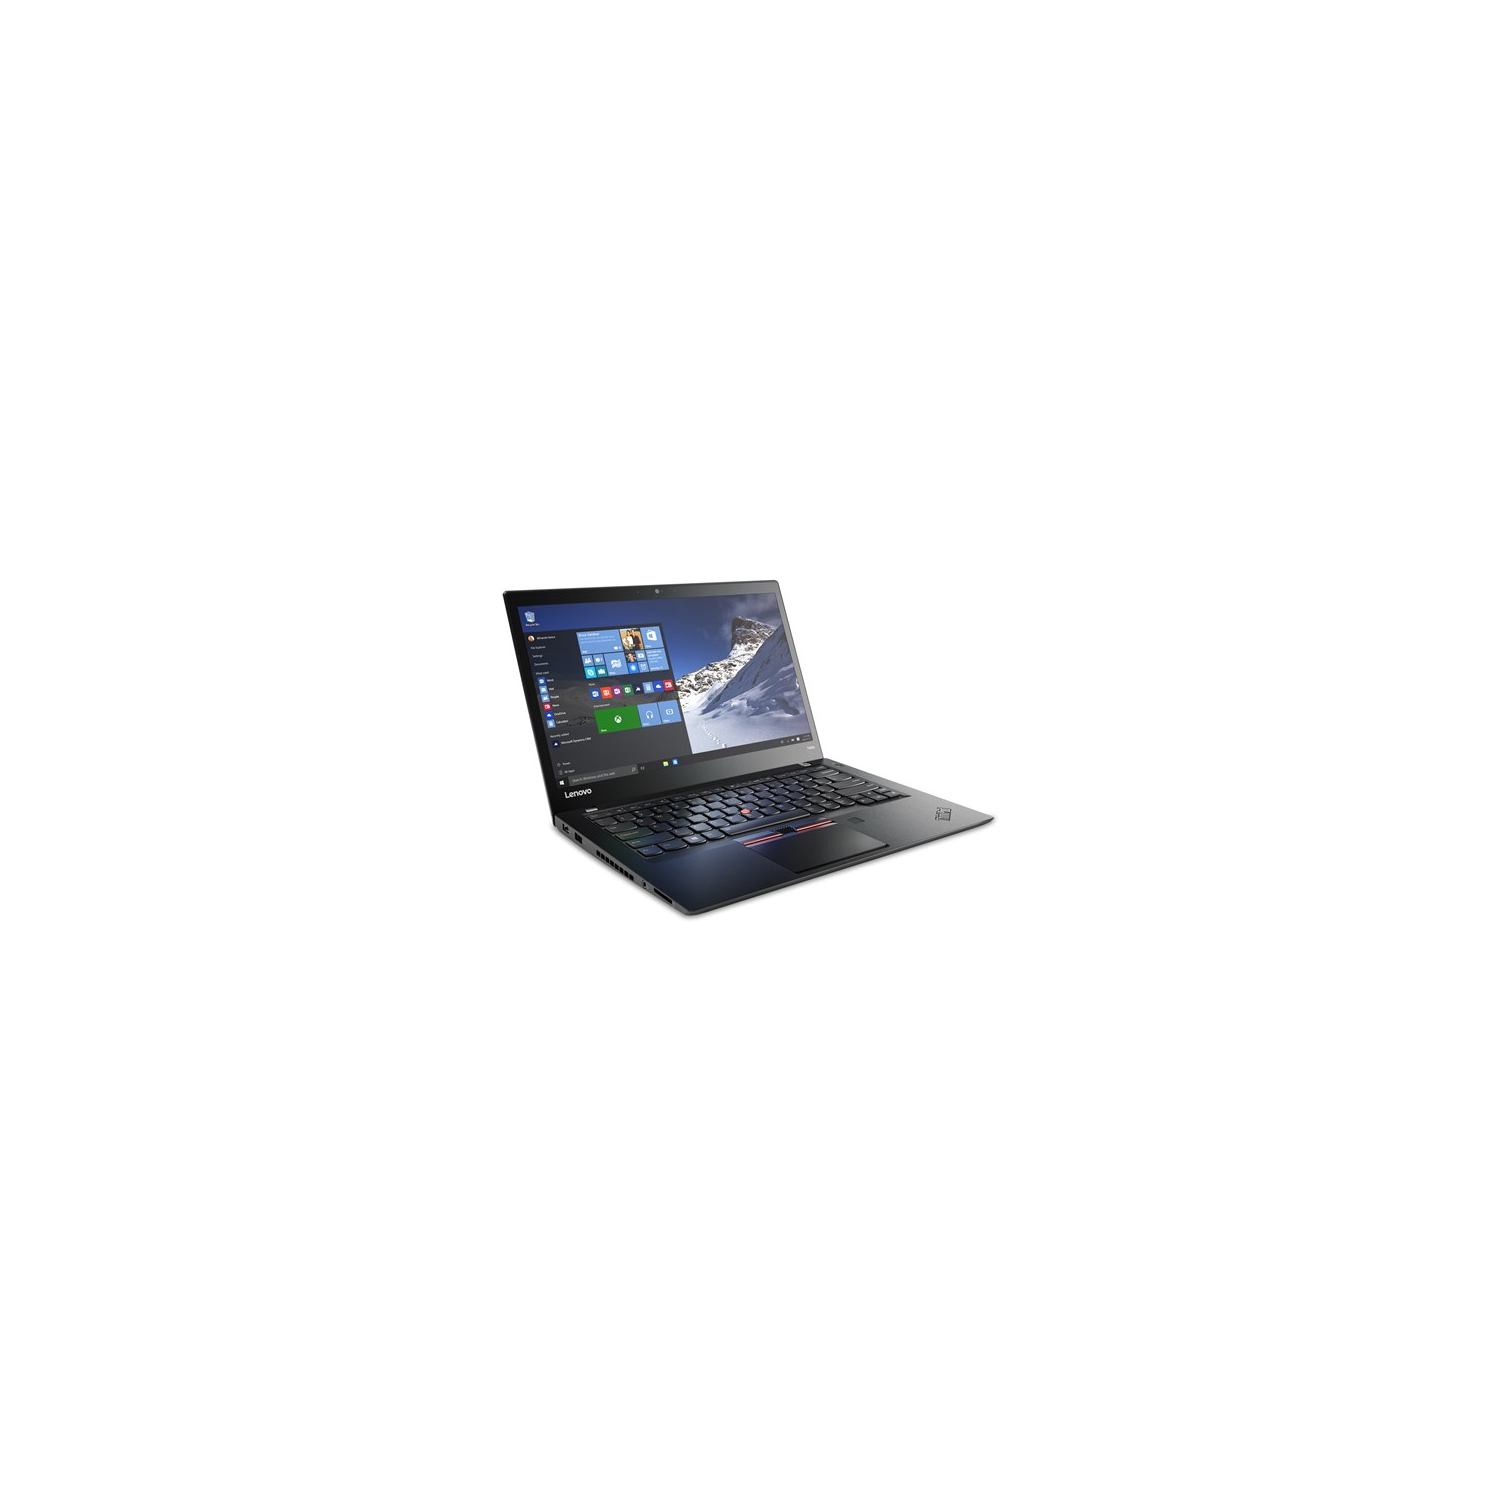 Refurbished (Good) - Lenovo ThinkPad T460S Ultra Thin 14" FHD Laptop, Intel Core i5-6300U, 8GB RAM, 256GB SSD, Windows 10 Pro